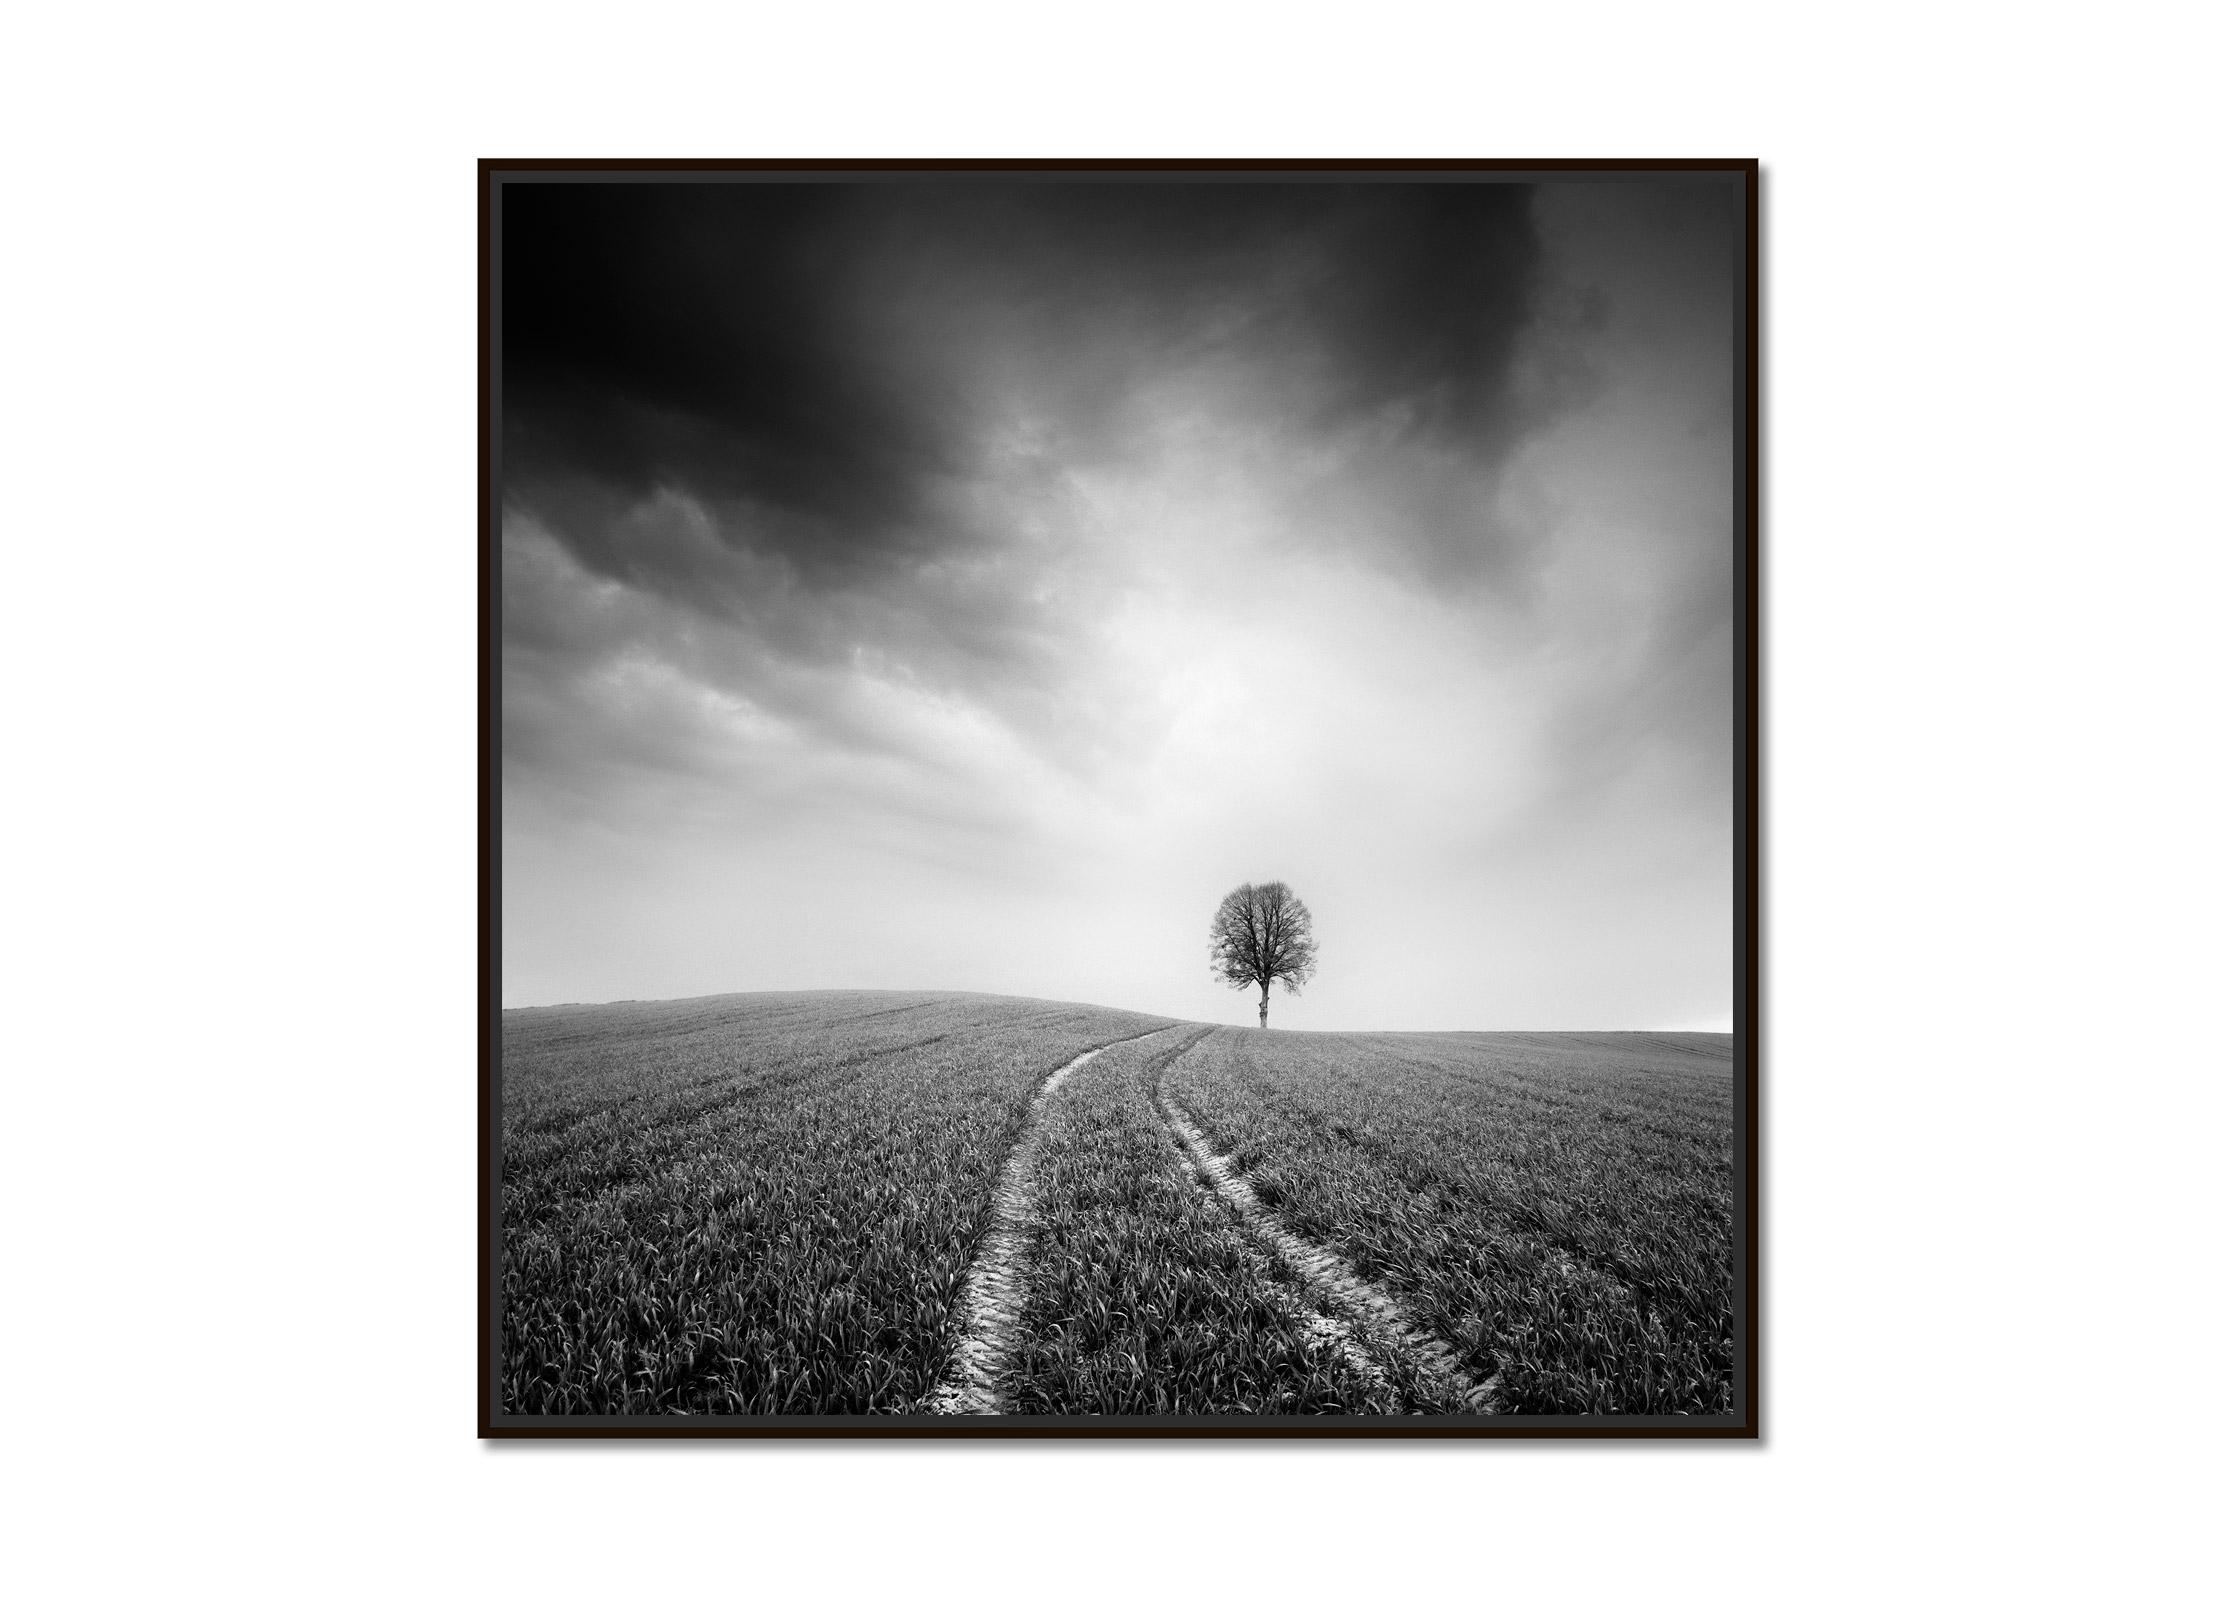 Bauernhof, ein einzelner Baum, minimalistische schwarz-weiße Kunst-Landschaftsfotografie – Print von Gerald Berghammer